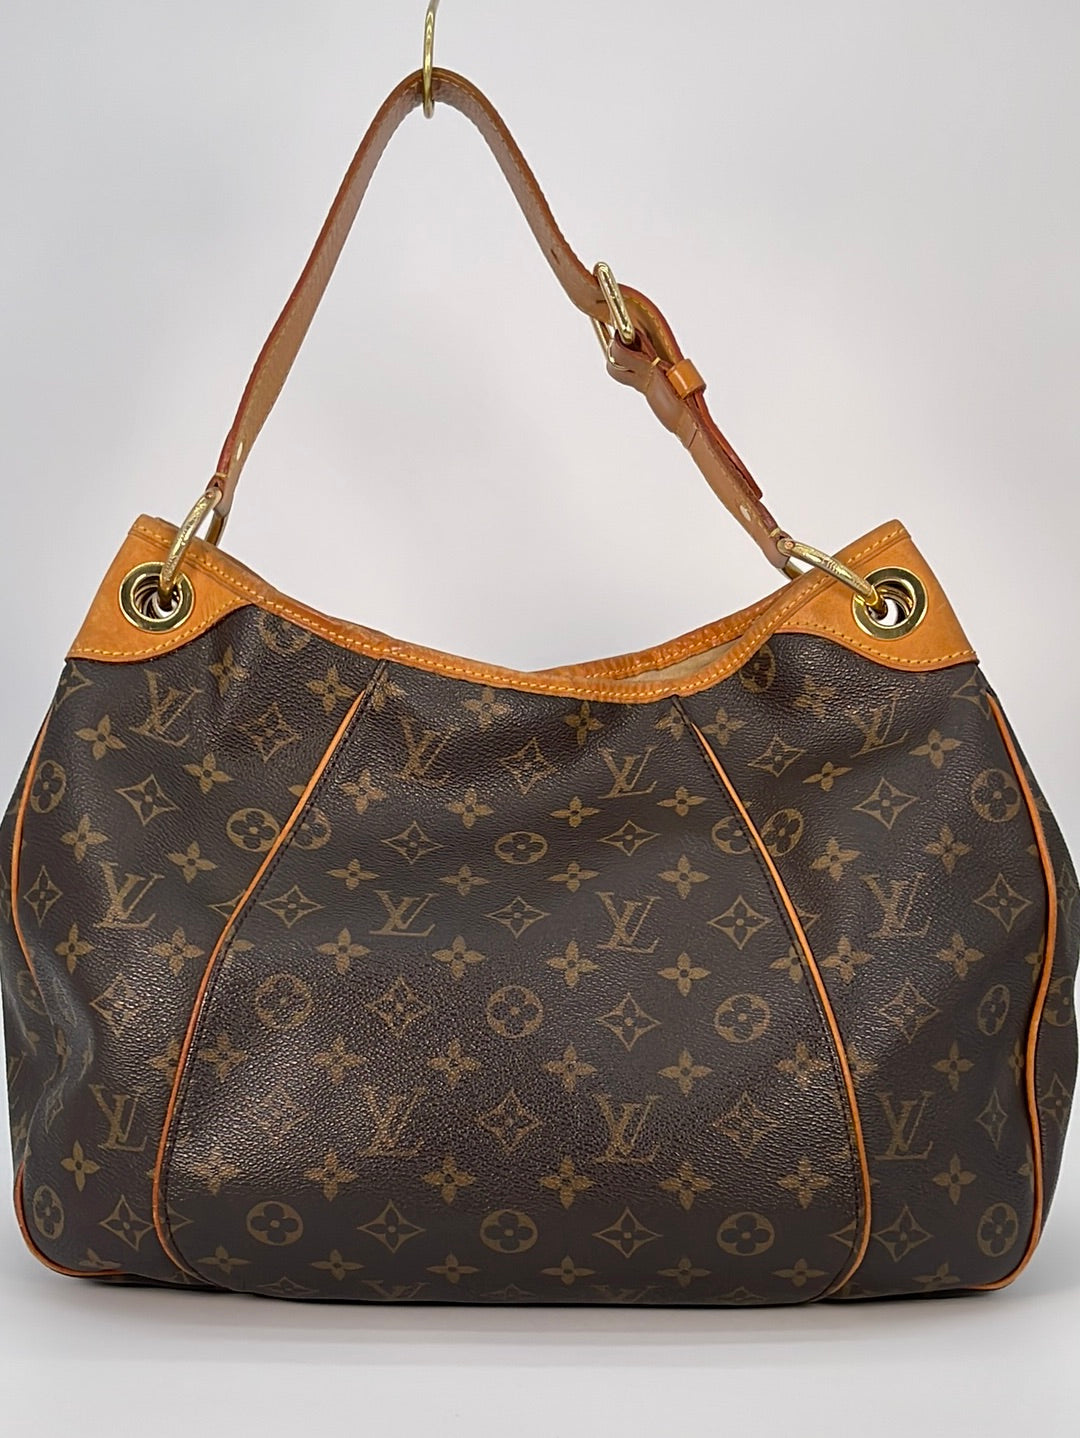 Preloved Louis Vuitton Monogram Canvas Nouvelle Vague Handbag FO0122 051123 Off